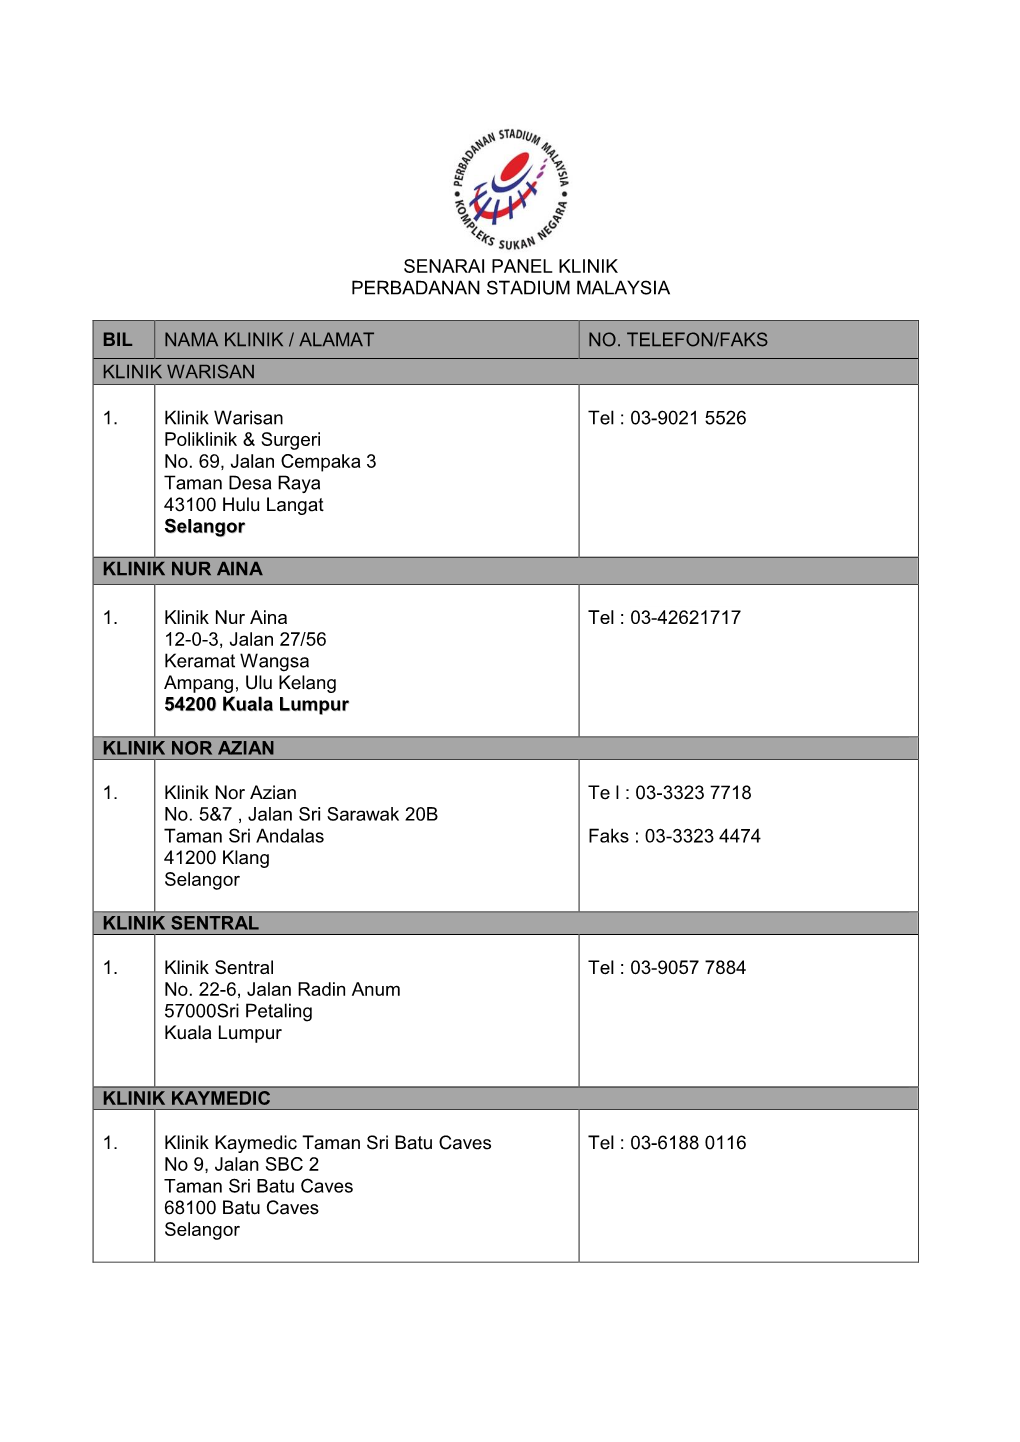 Senarai Panel Klinik Perbadanan Stadium Malaysia